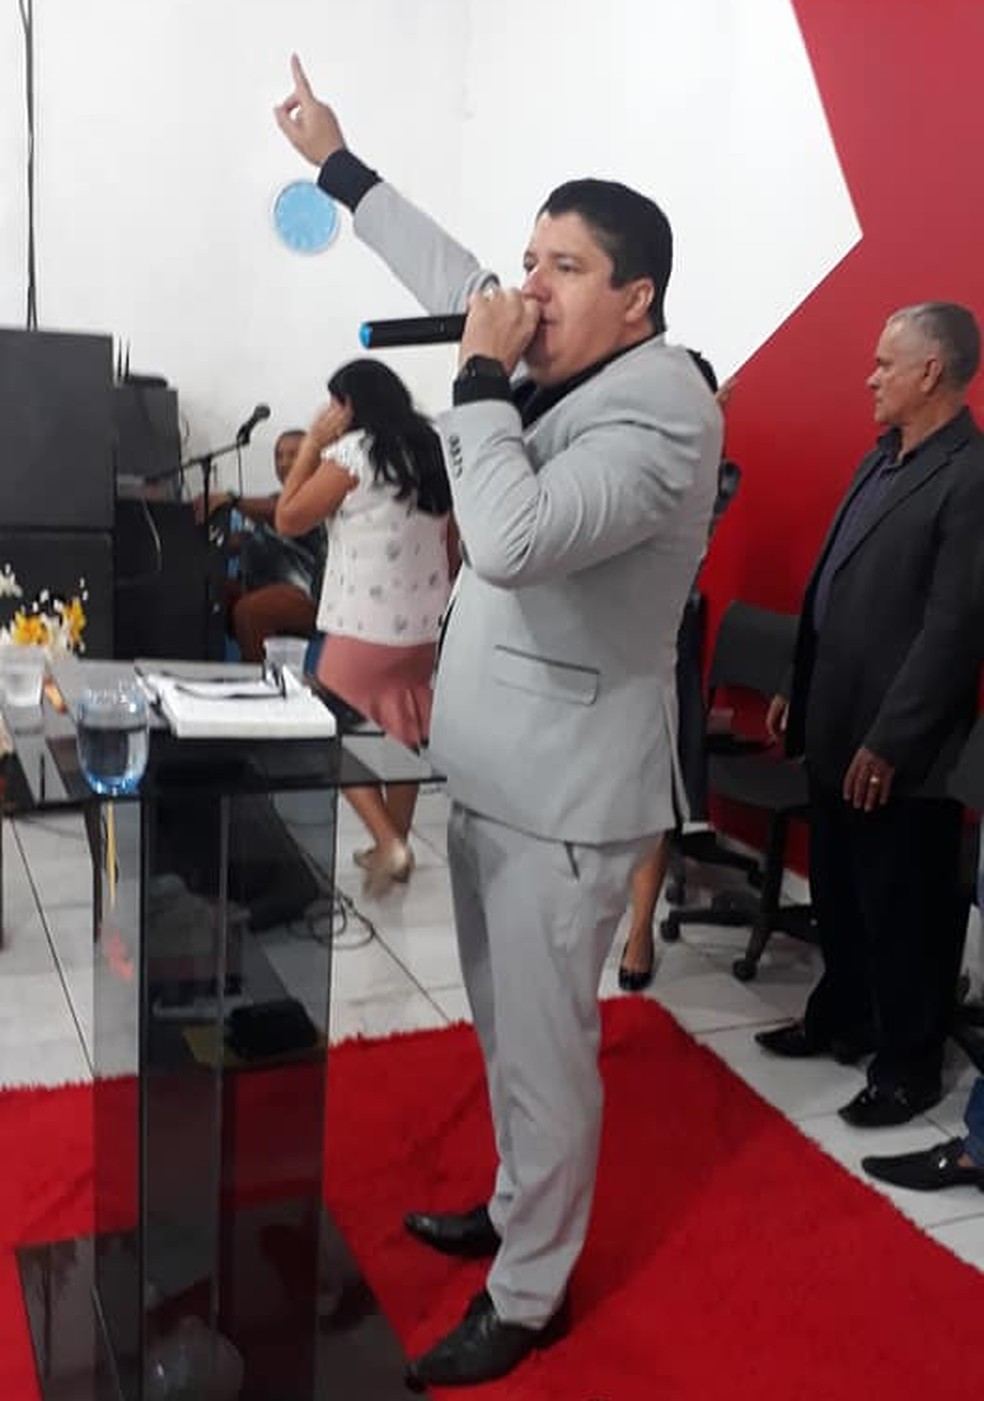  Pastor Jesus Gorgs pregando — Foto: Facebook/Divulgação